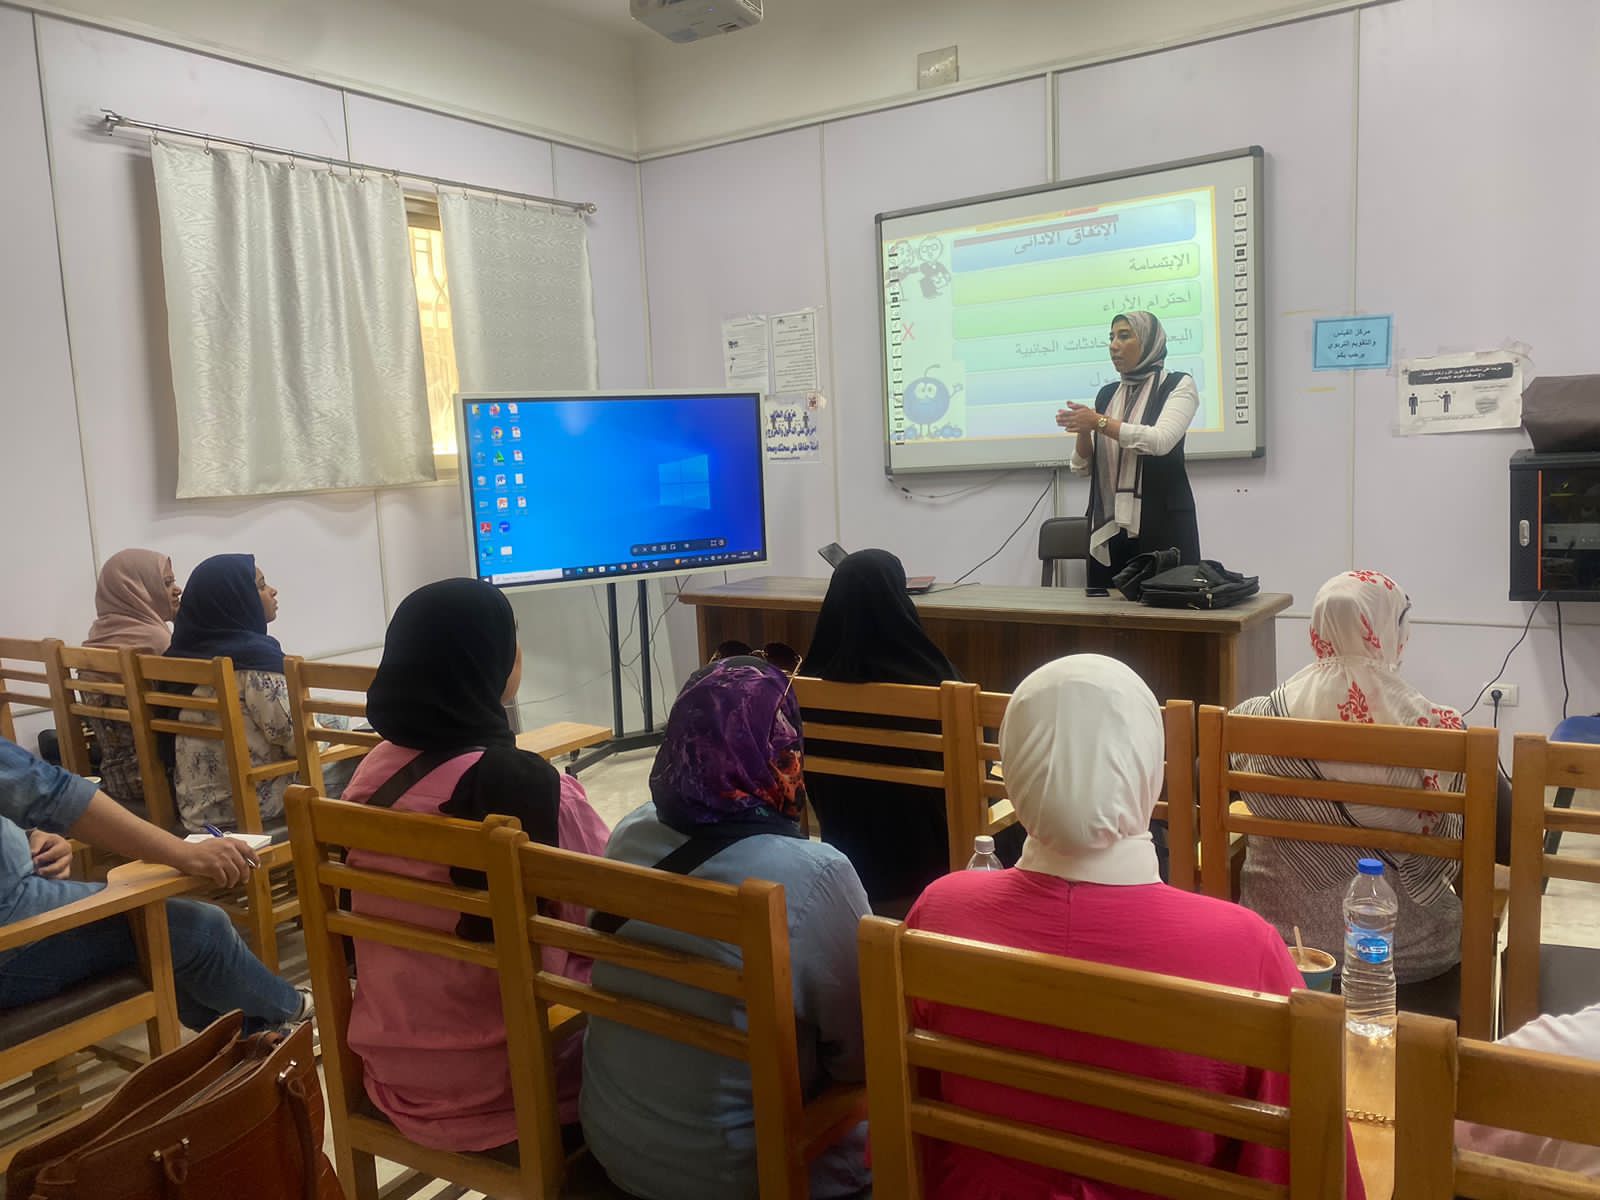 دورة تدريبية حول "معلم الظل" تنظمها كلية الدراسات العليا للتربية بجامعة القاهرة